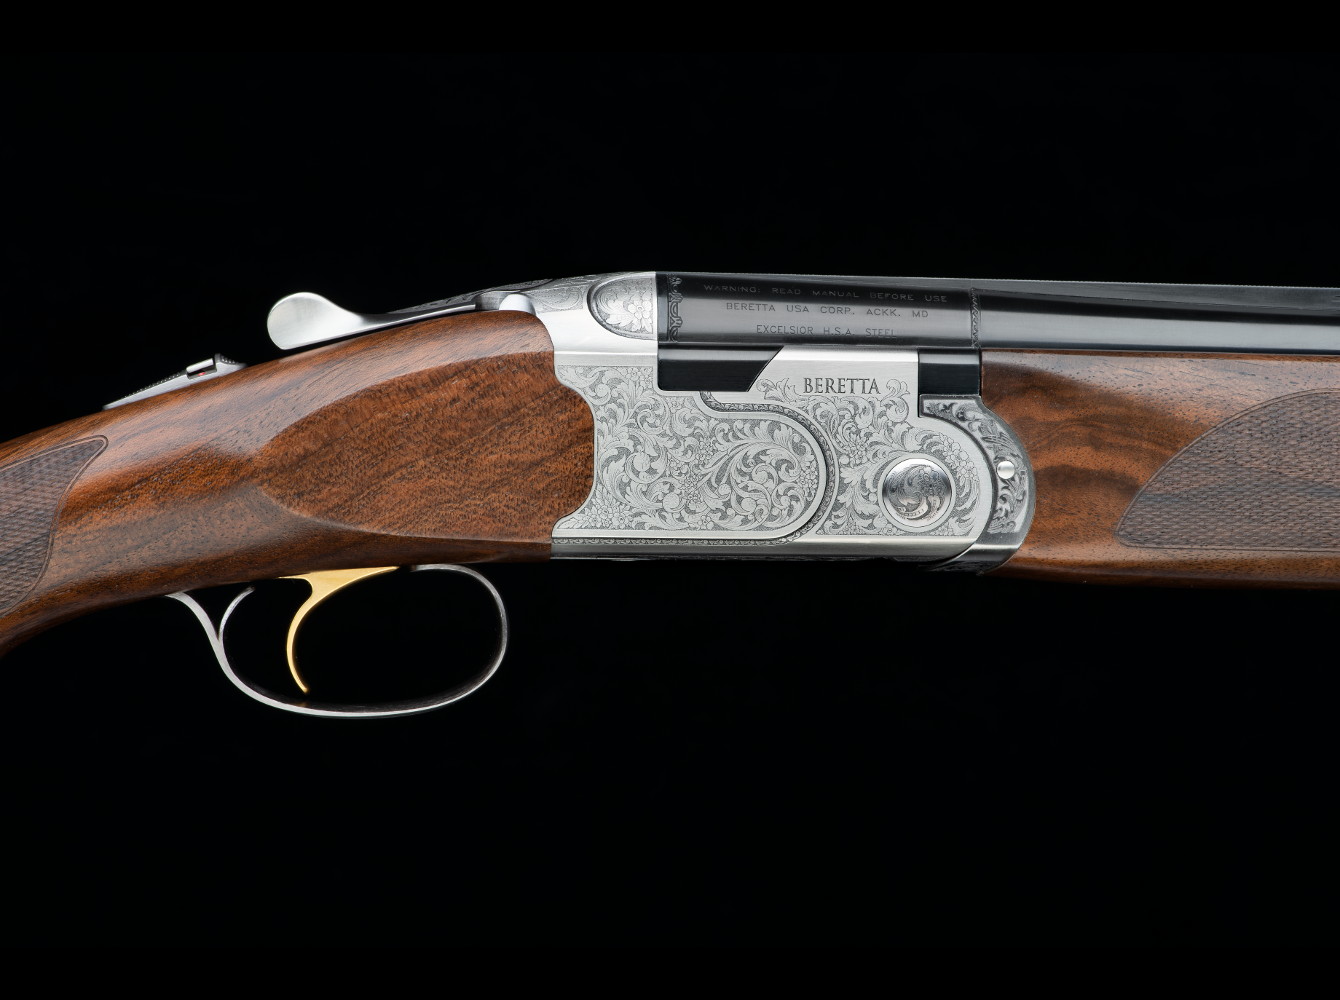 bascula del nuovo fucile da caccia beretta, 687 silver pigeon v